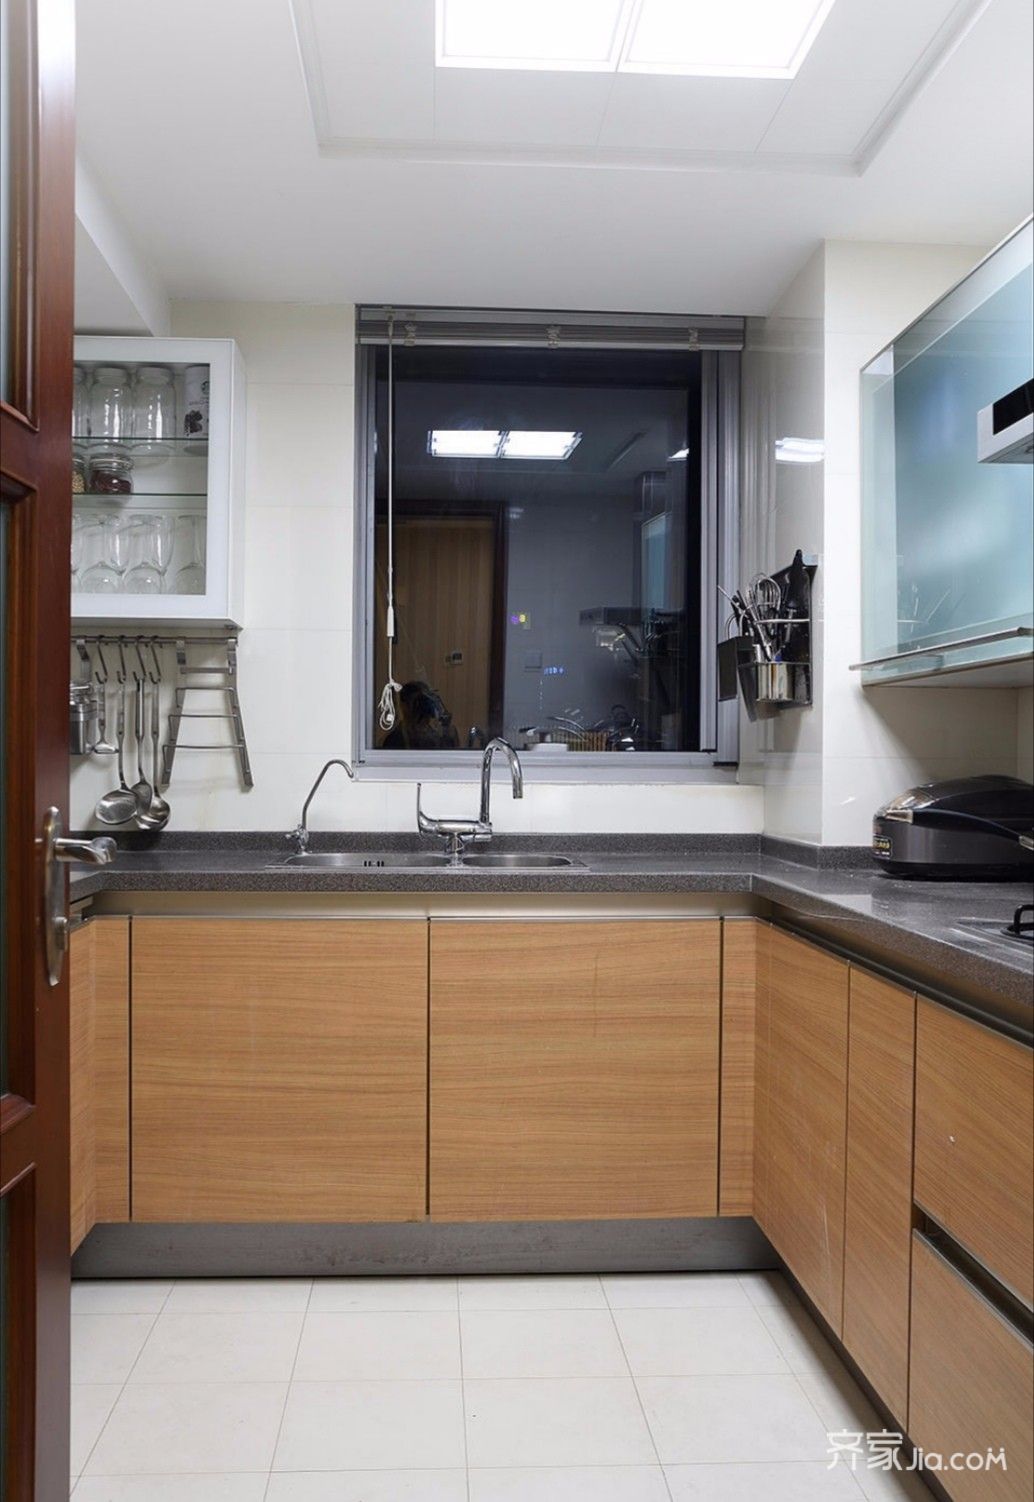 原木色的橱柜搭配白色的瓷砖,让人一走进厨房就有种舒适的感觉